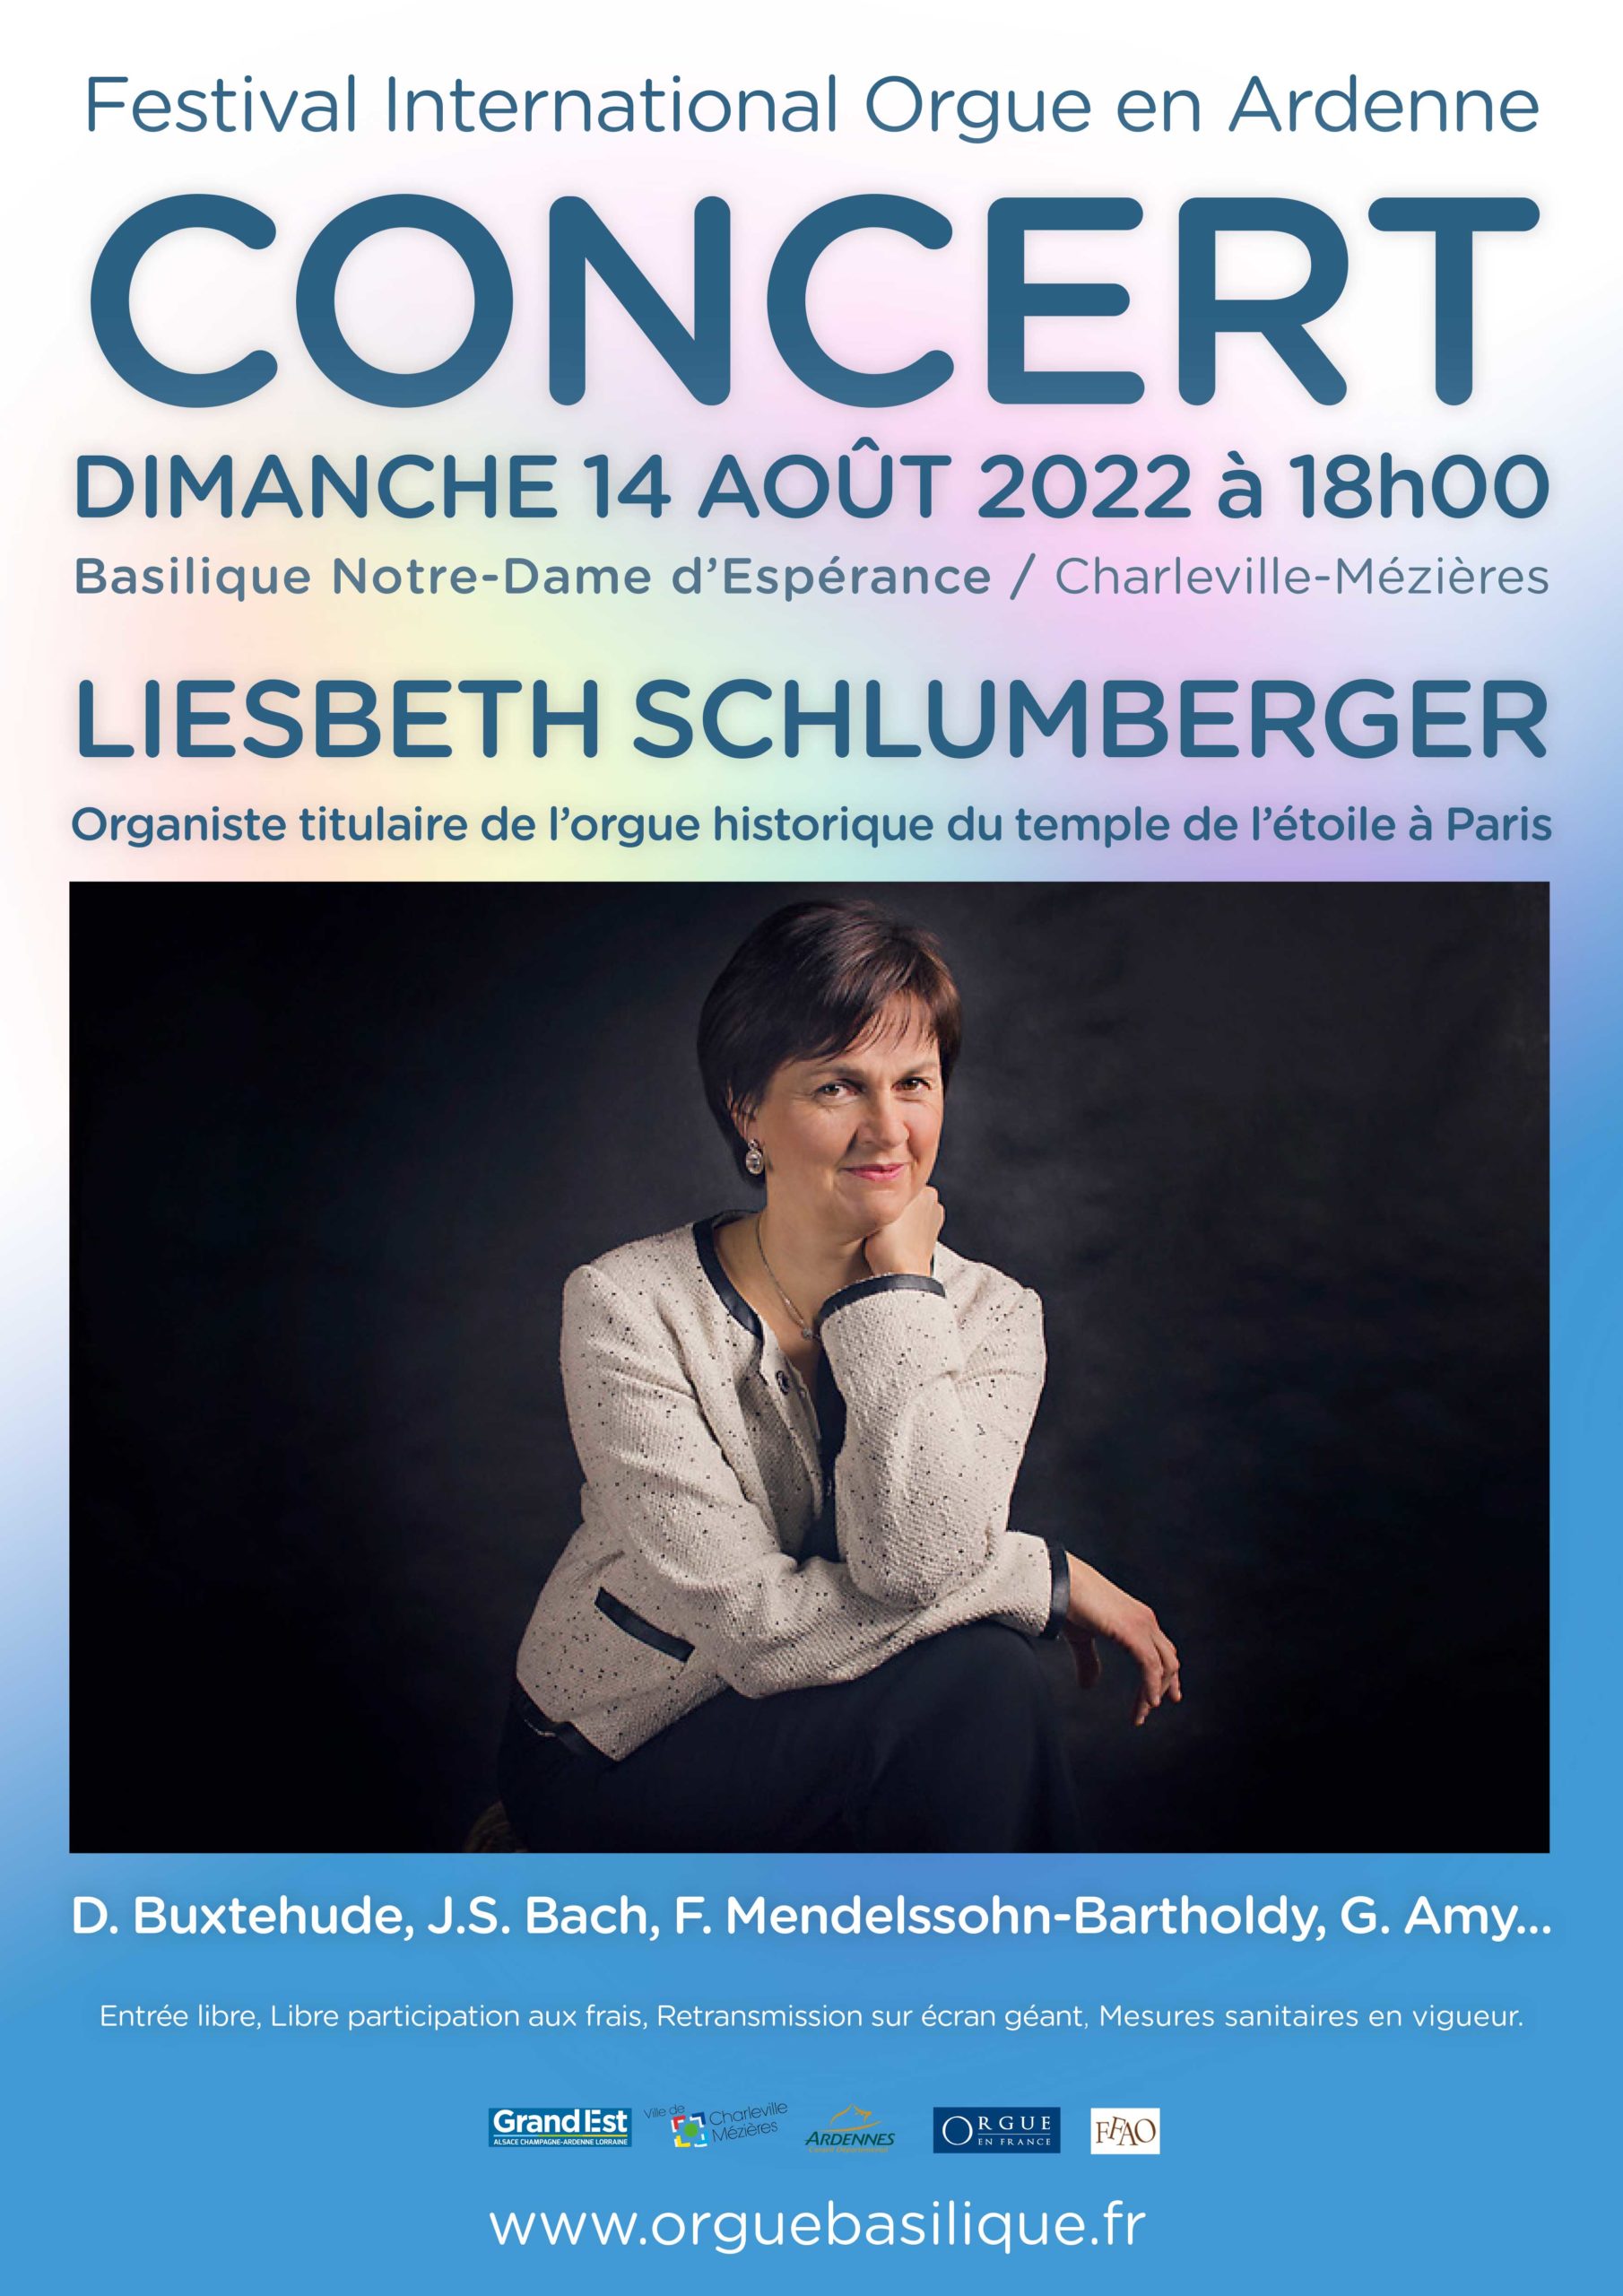 Liesbeth Schlumberger